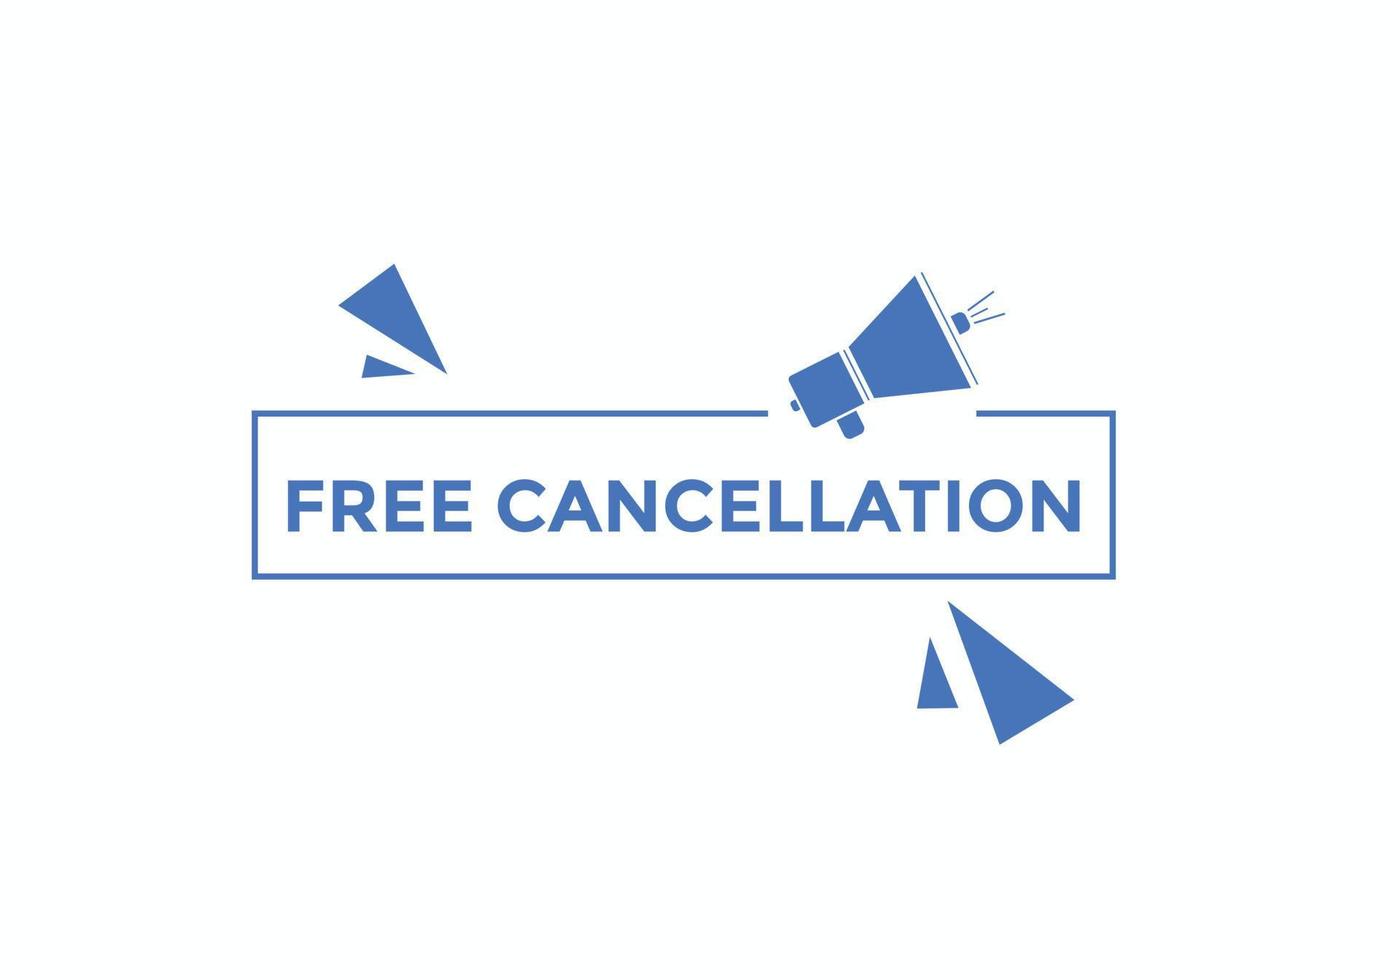 botón de cancelación gratuita. burbuja de habla de cancelación gratuita. plantilla de etiqueta de banner de cancelación gratuita vector